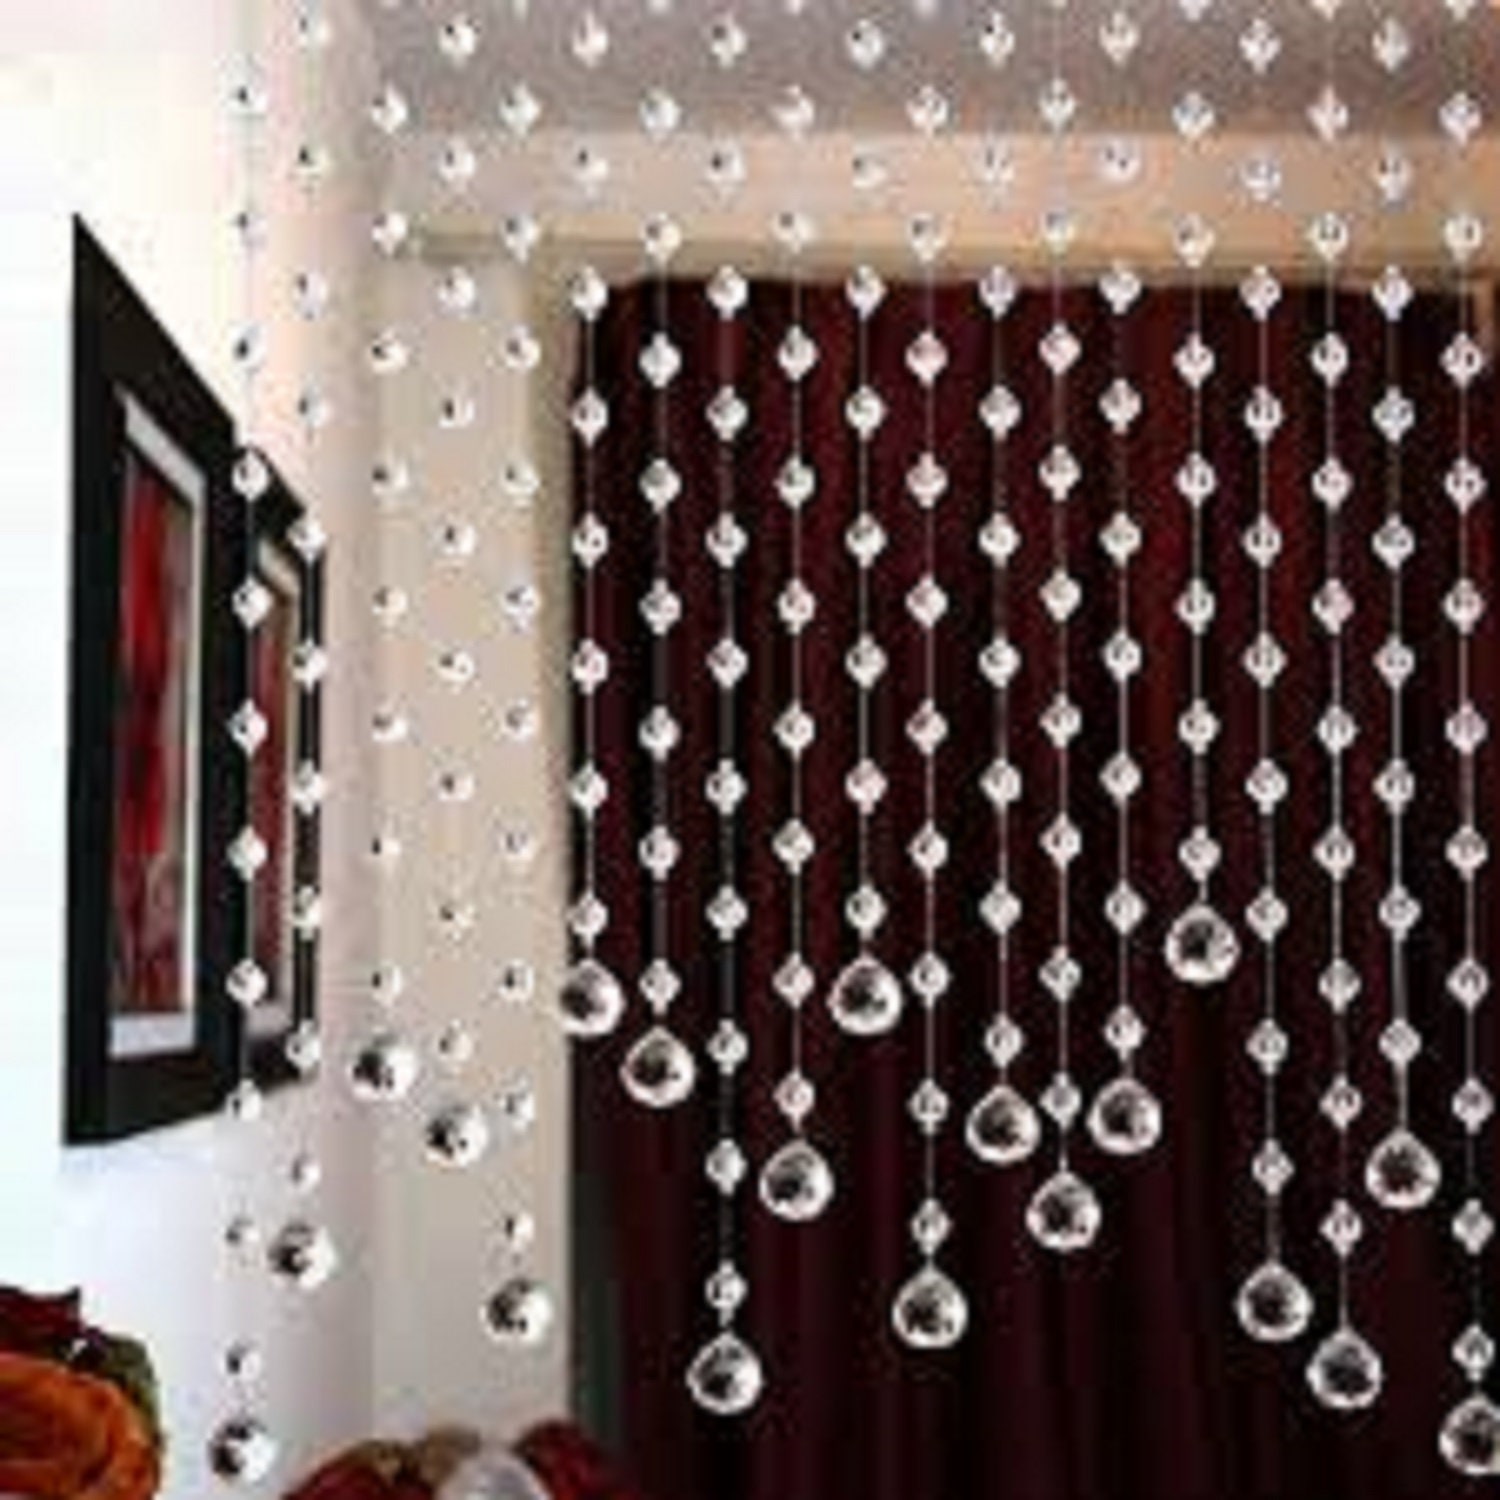 Buy Crystal Bead Curtain - KEERADS Room Door Window Beads Crystal